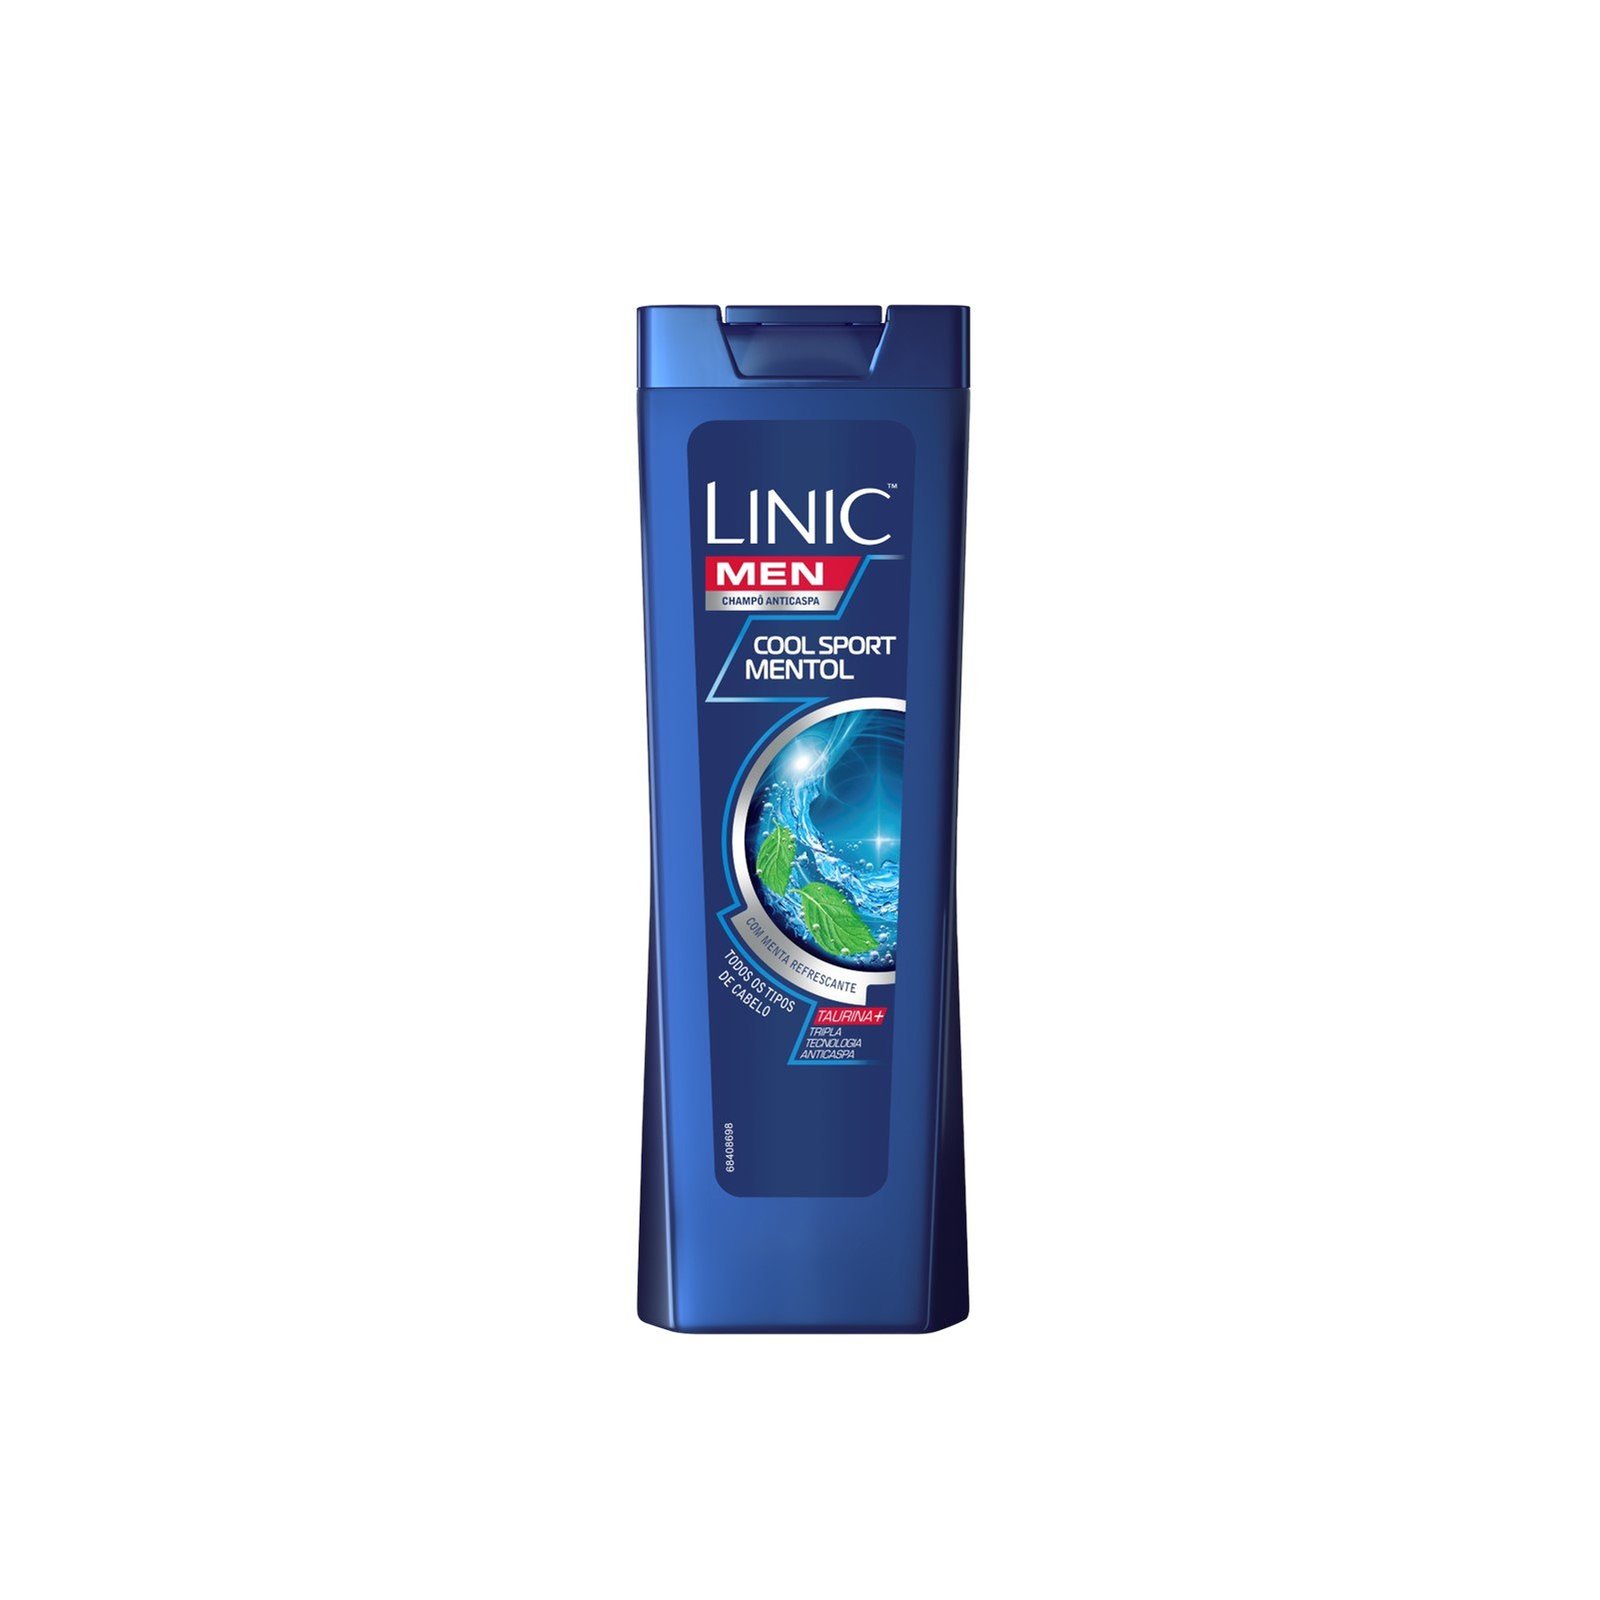 Linic Men Anti-Dandruff Cool Sport Mint Shampoo 225ml (7.6 fl oz)